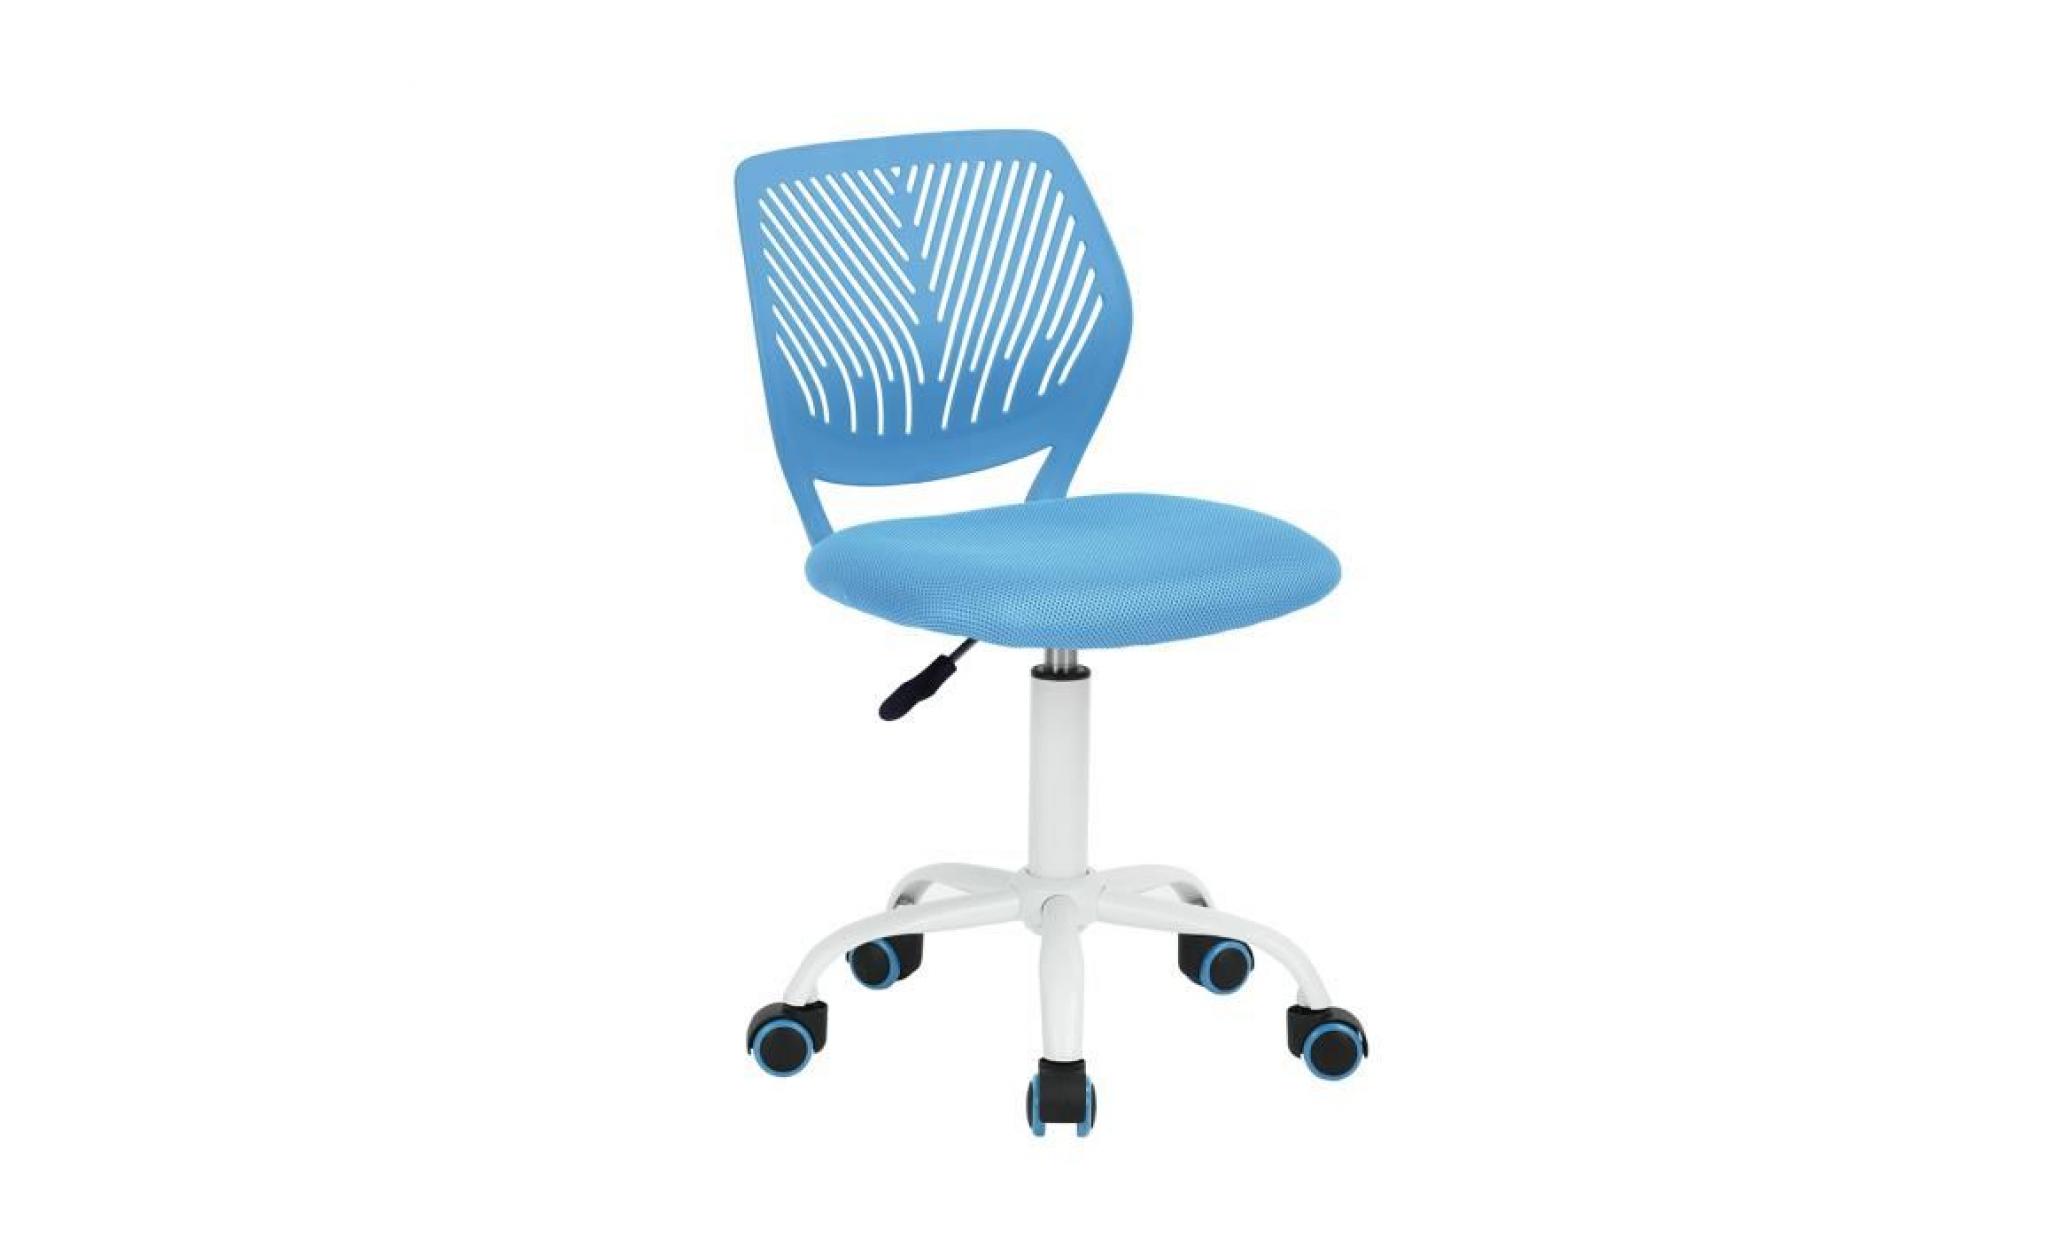 siège chaise de bureau enfant bleu haute réglable en plastique métal eponge réseau à roulettes